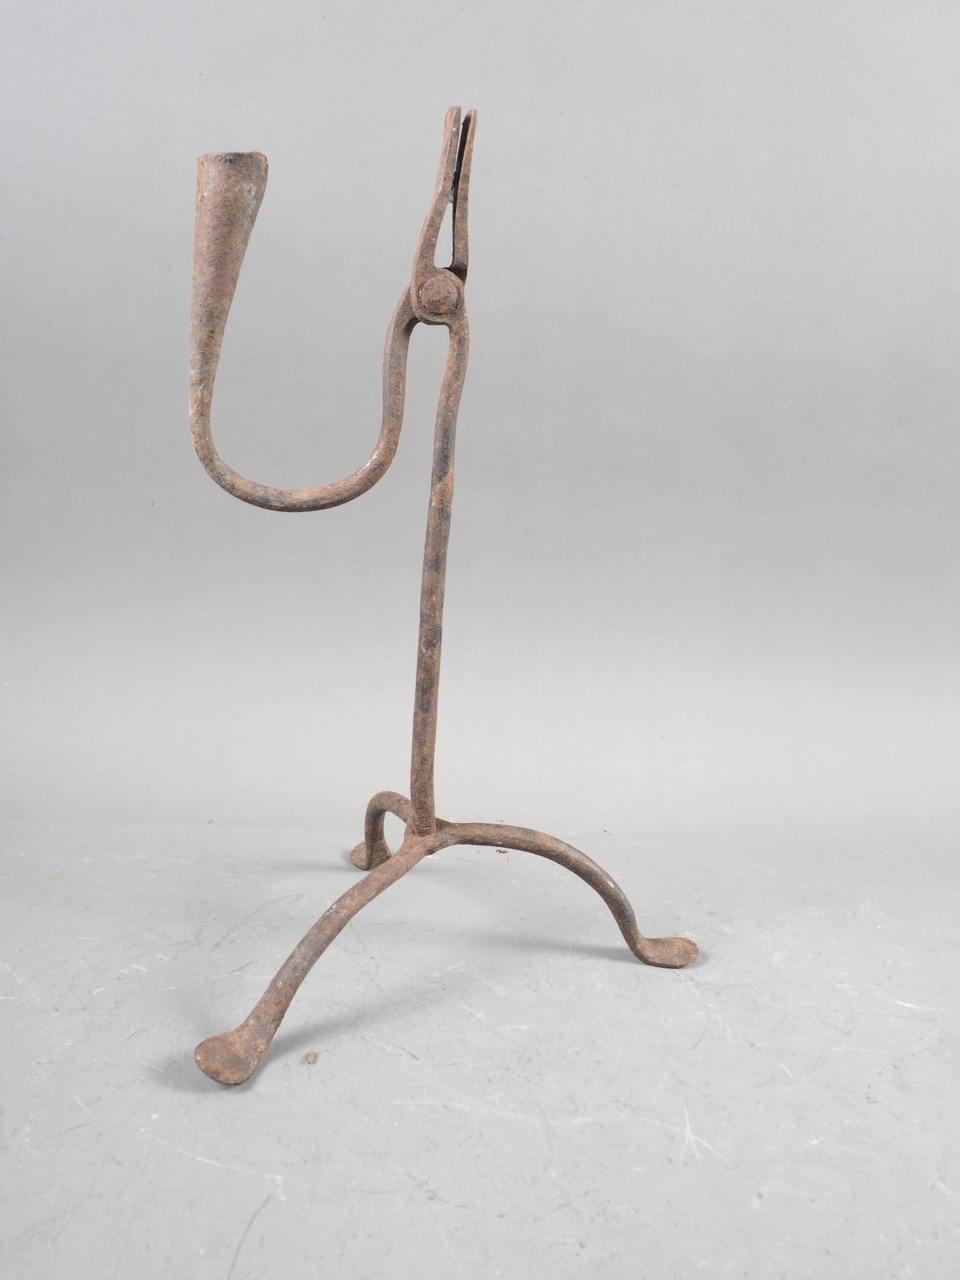 An antique wrought iron rush light holder, 11 1/4" high